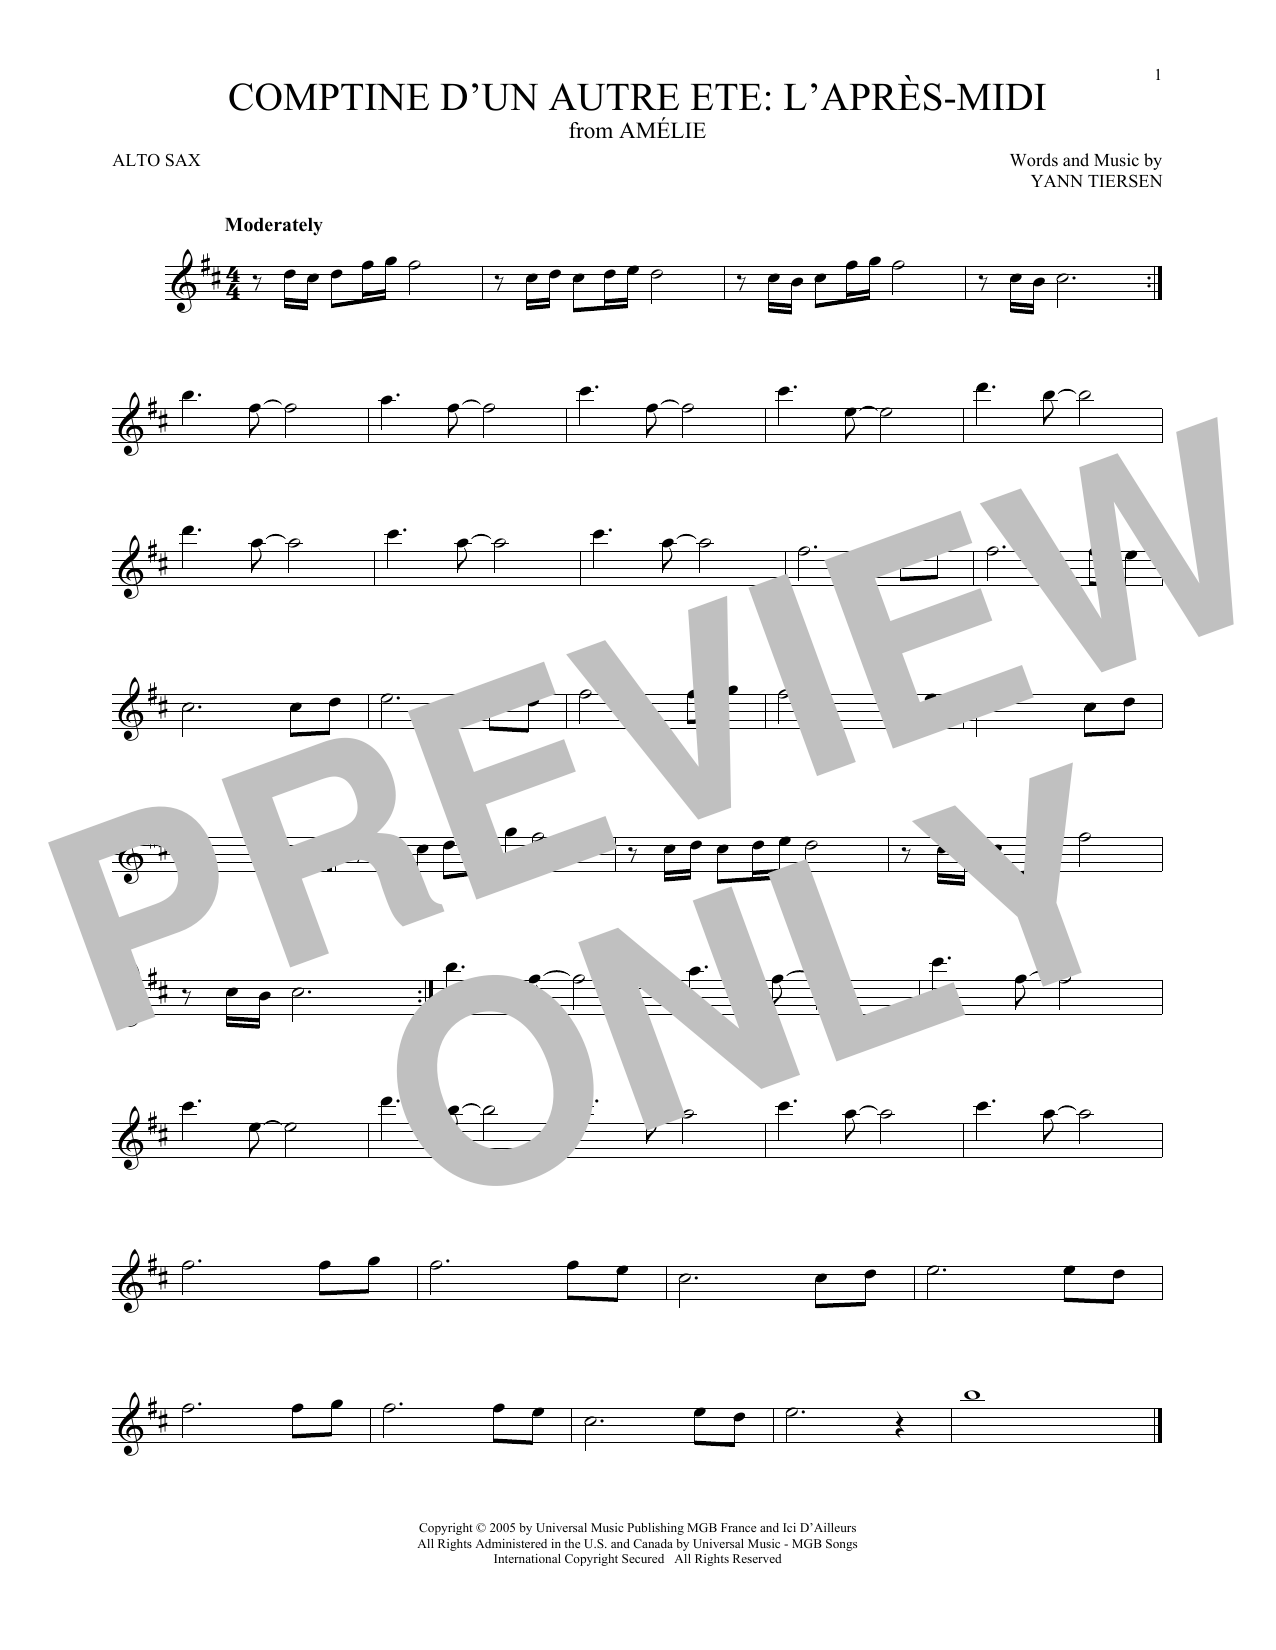 Yann Tiersen Comptine d'un autre été: L'après-midi (from Amelie) Sheet Music Notes & Chords for Big Note Piano - Download or Print PDF